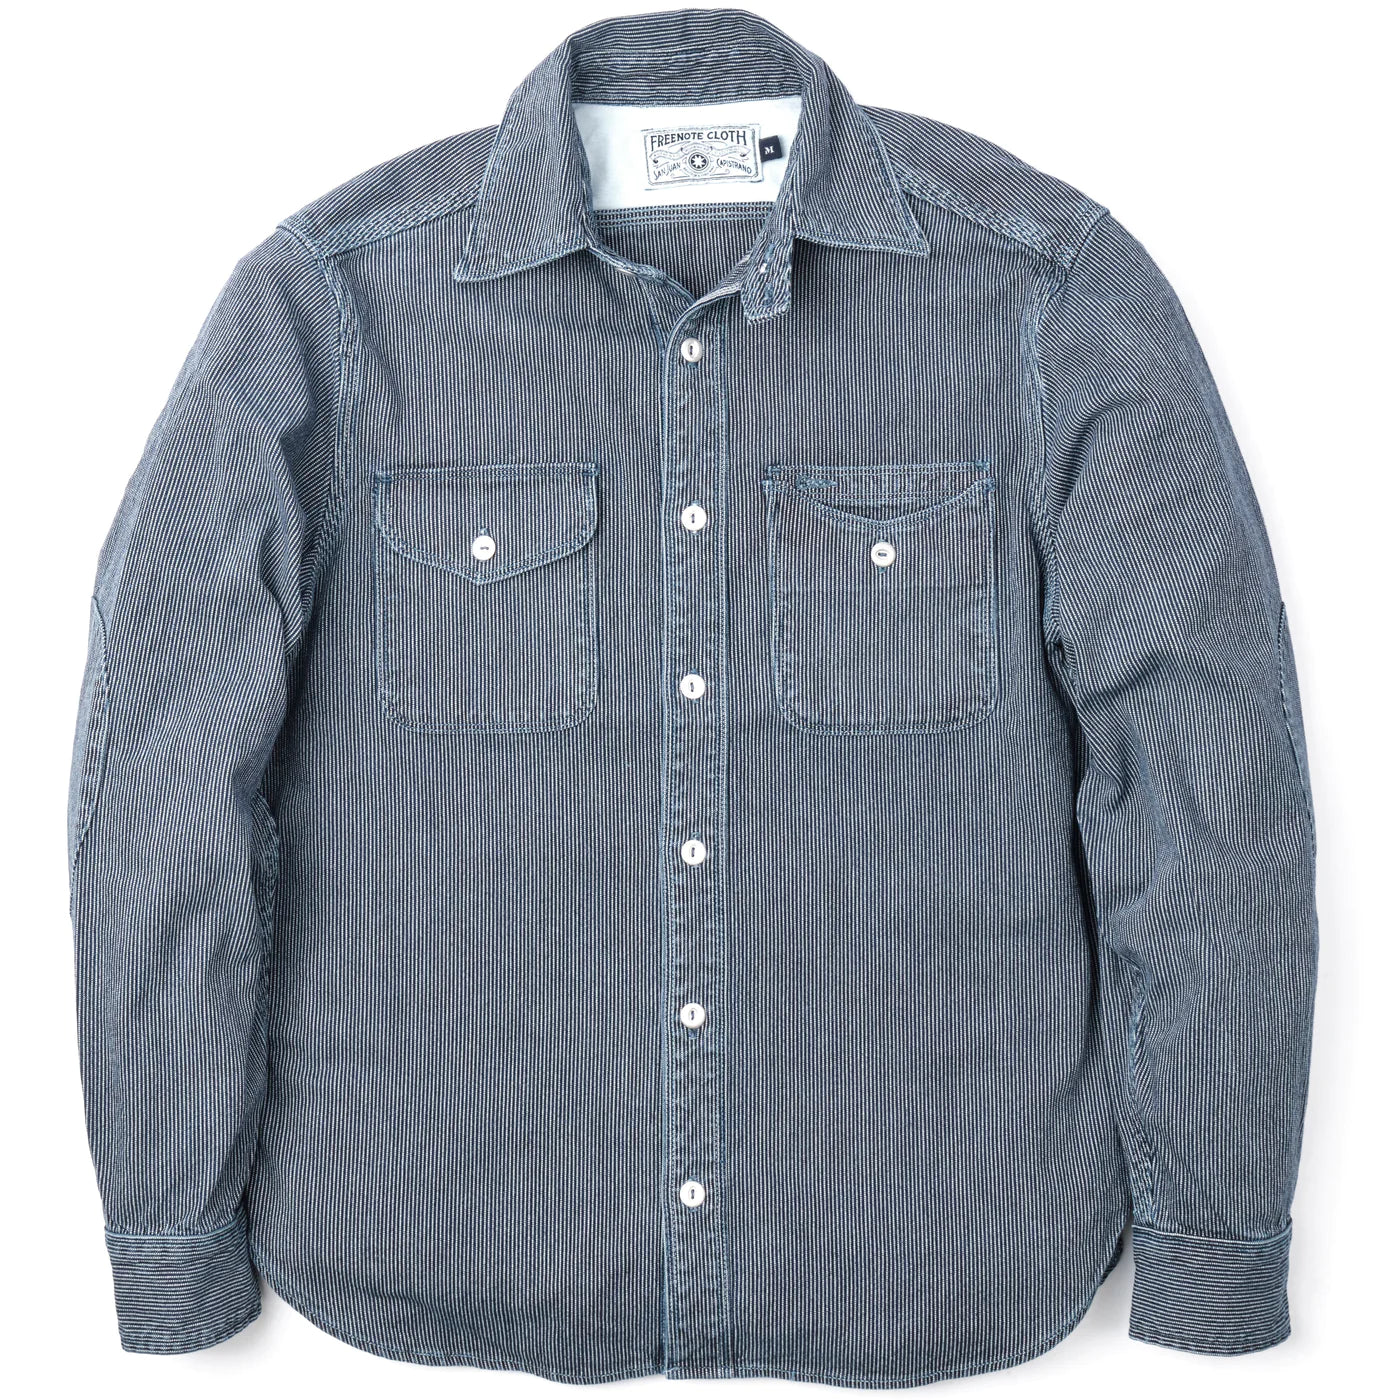 Freenote Cloth Lambert Shirt - Stone Washed Stripe